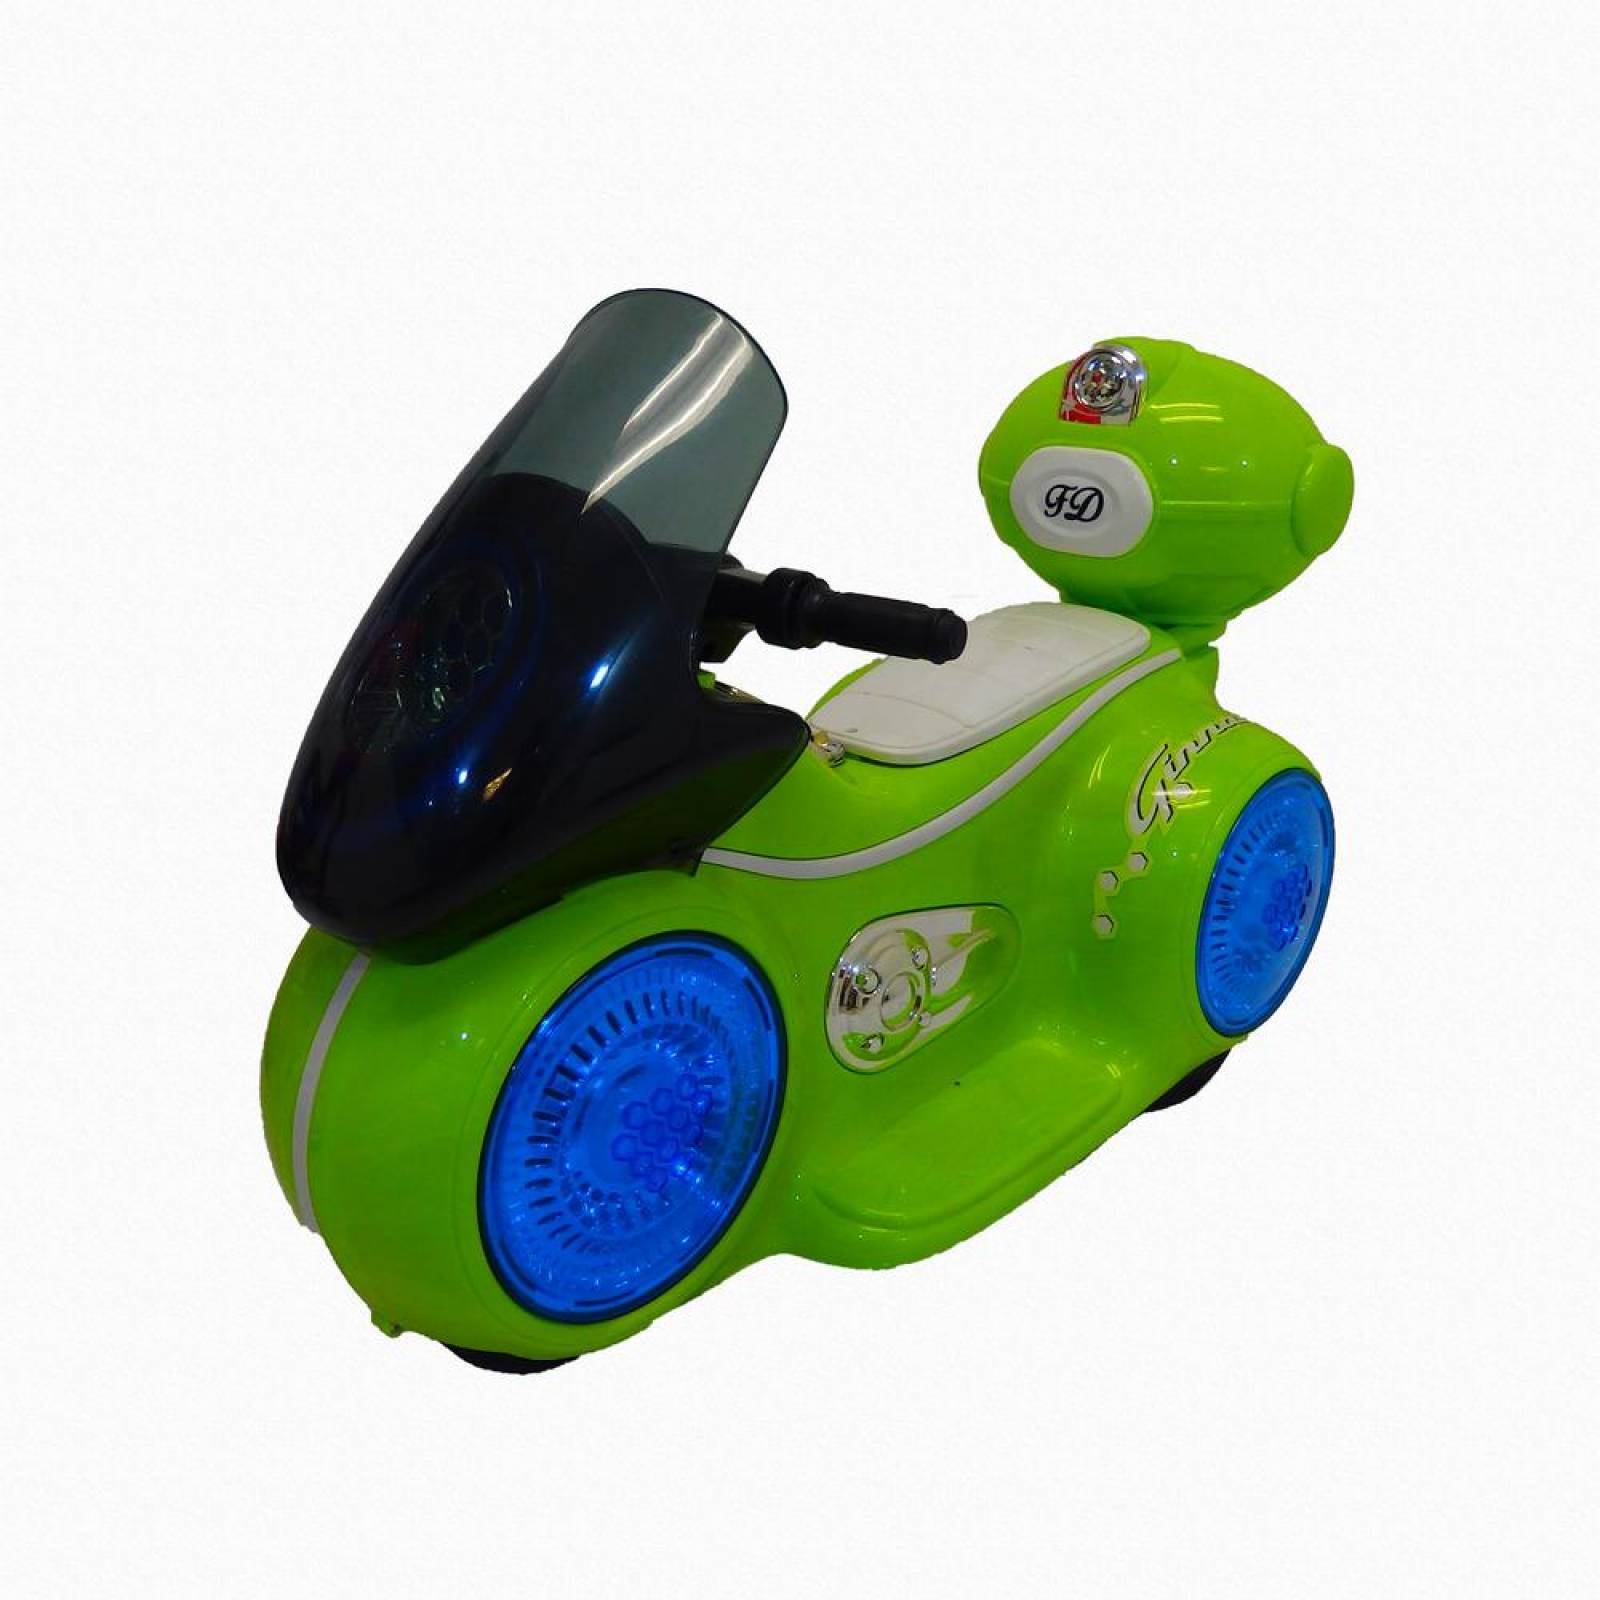 Motocicleta  deportiva eléctrica con sonido y led para niños  - Verde